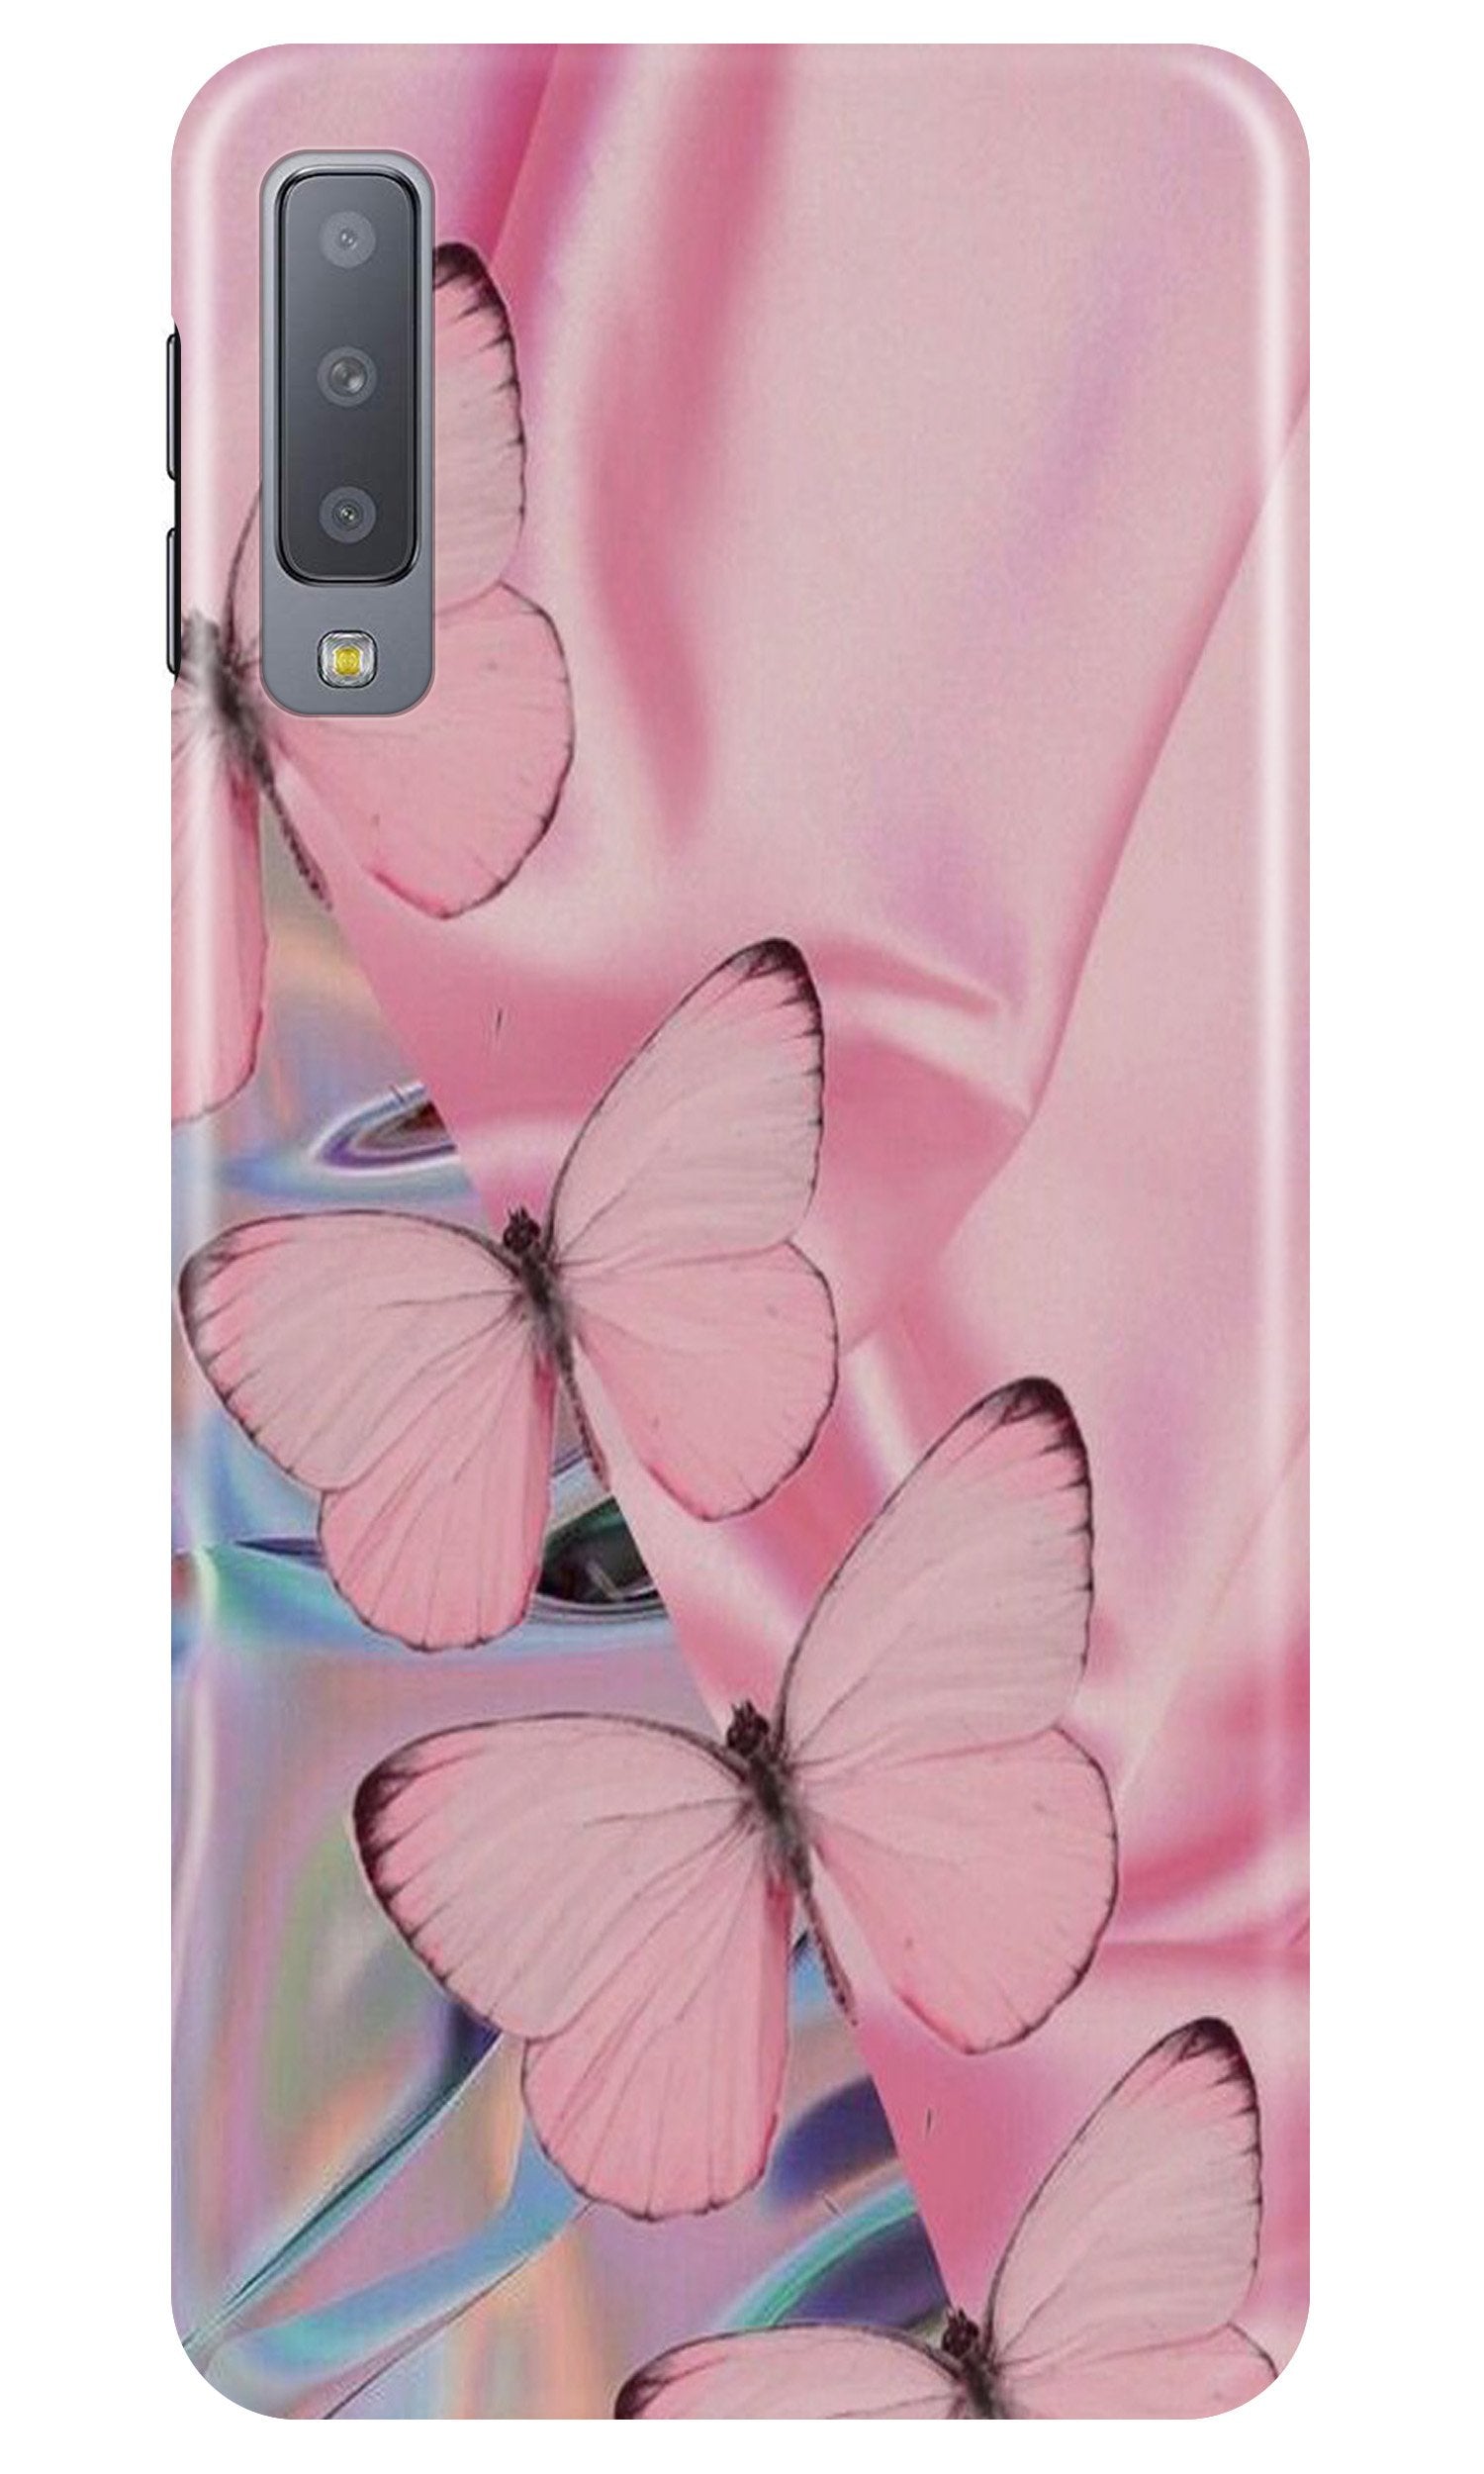 Butterflies Case for Samsung Galaxy A70